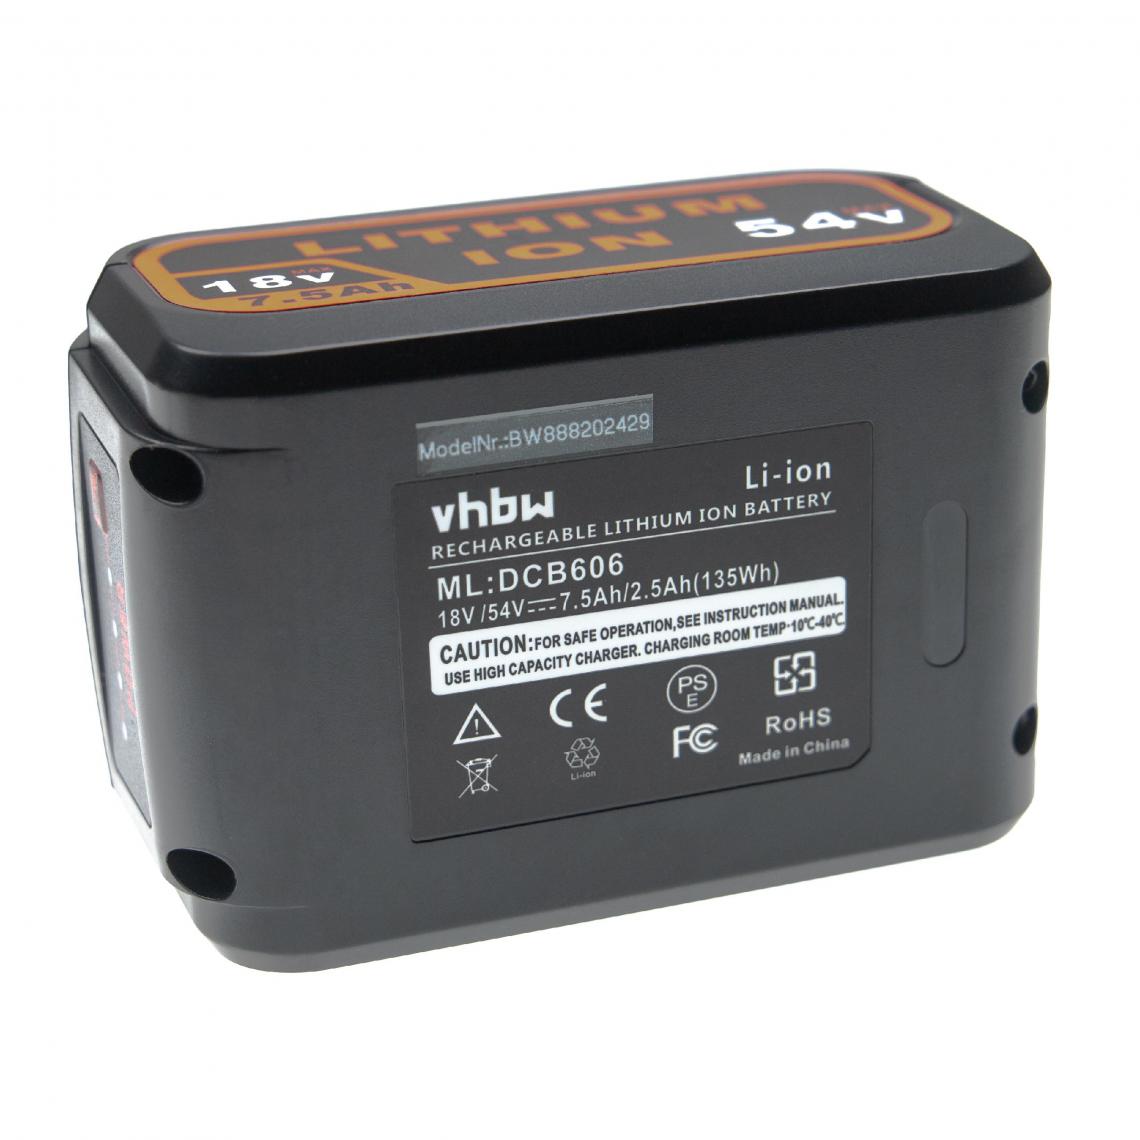 Vhbw - vhbw Batterie compatible avec DeWalt DCS391, DCS391B, DCS391L1, DCS391M1 outil électrique (7500 mAh, Li-ion, 18 V / 54 V) - Accessoires vissage, perçage